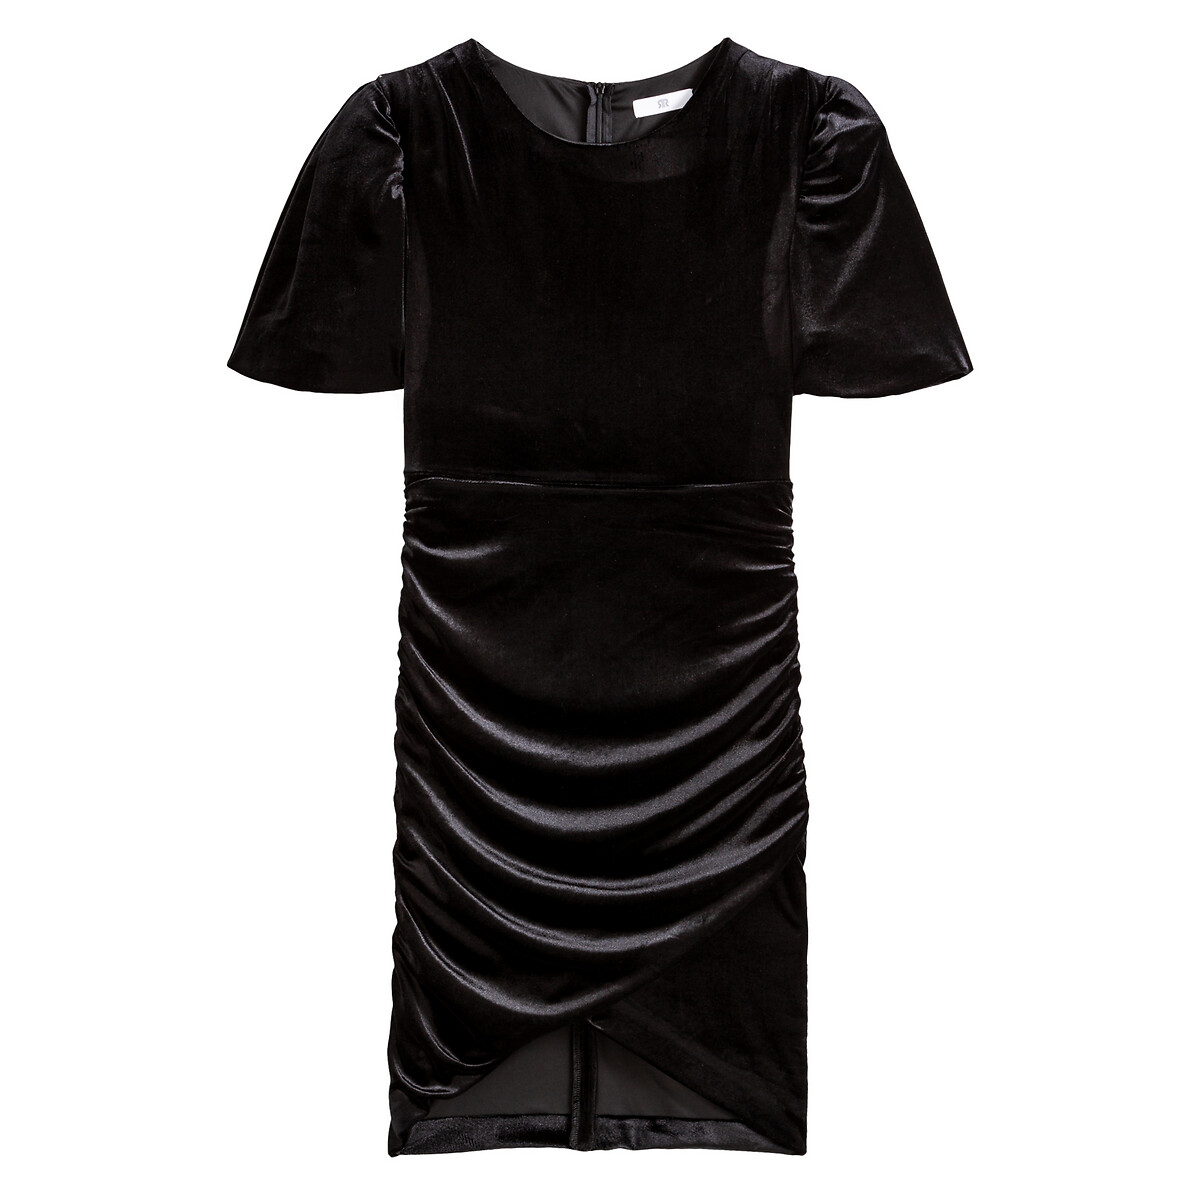 Платье LaRedoute Облегающее из велюрового трикотажа низ с драпировкой 38 (FR) - 44 (RUS) черный, размер 38 (FR) - 44 (RUS) Облегающее из велюрового трикотажа низ с драпировкой 38 (FR) - 44 (RUS) черный - фото 5